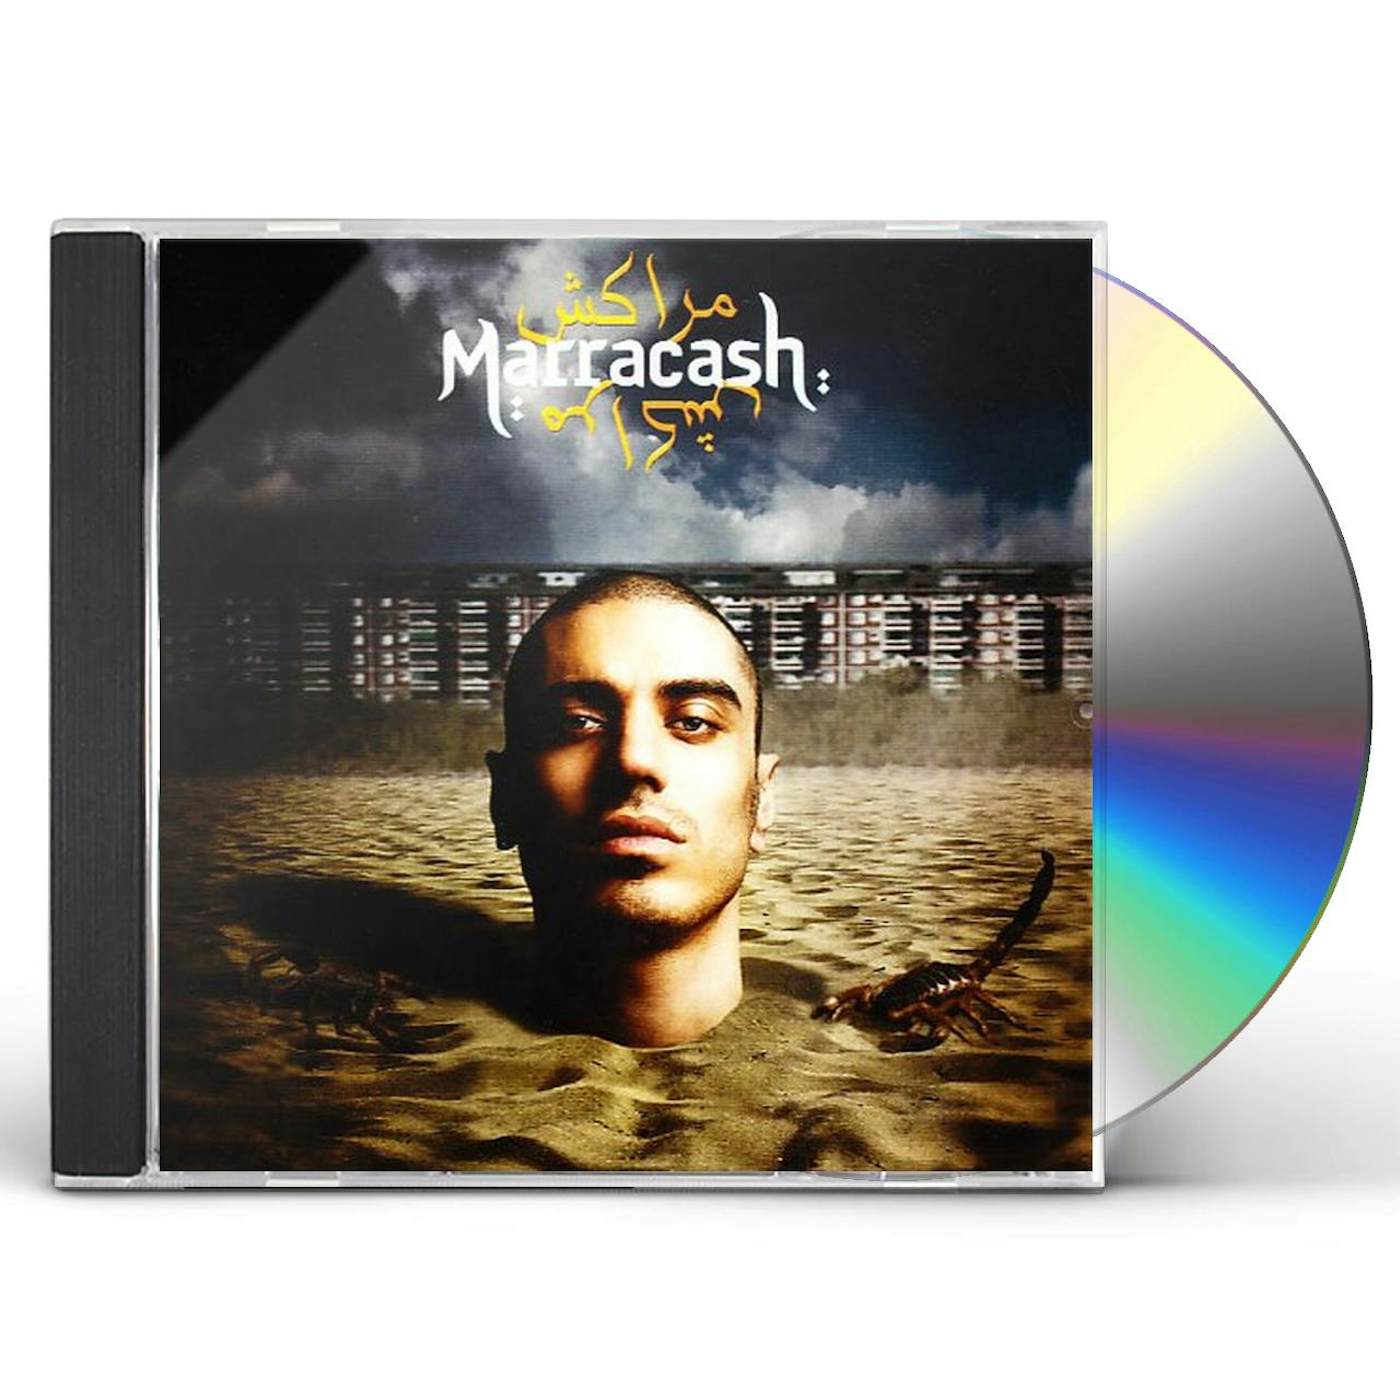 MARRACASH CD